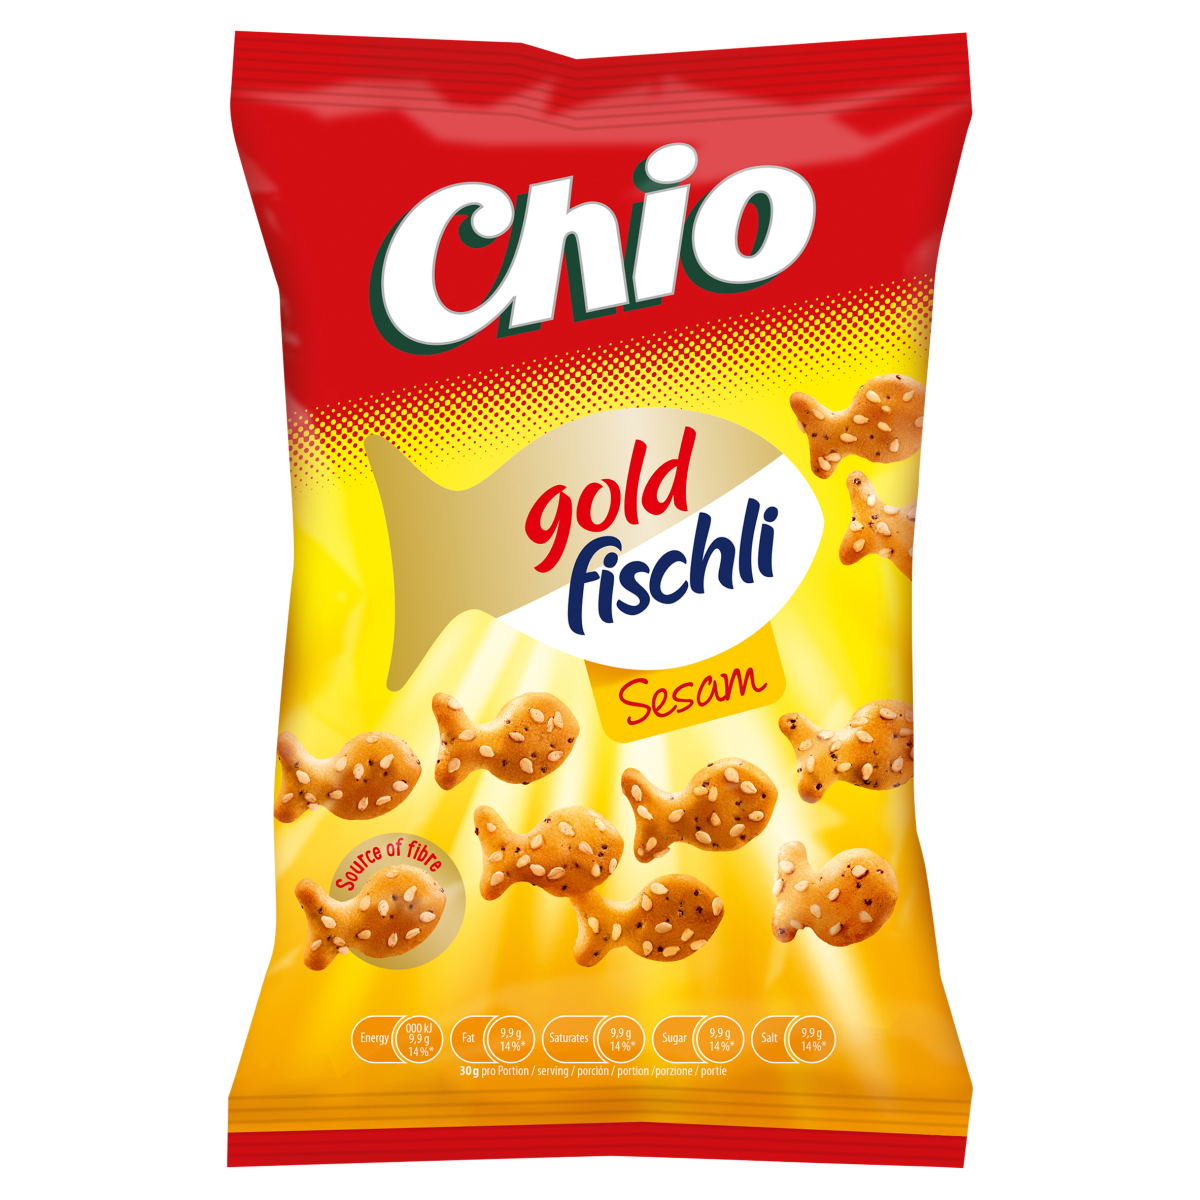 CHIO GOLD FISCHLI SESAM 80G